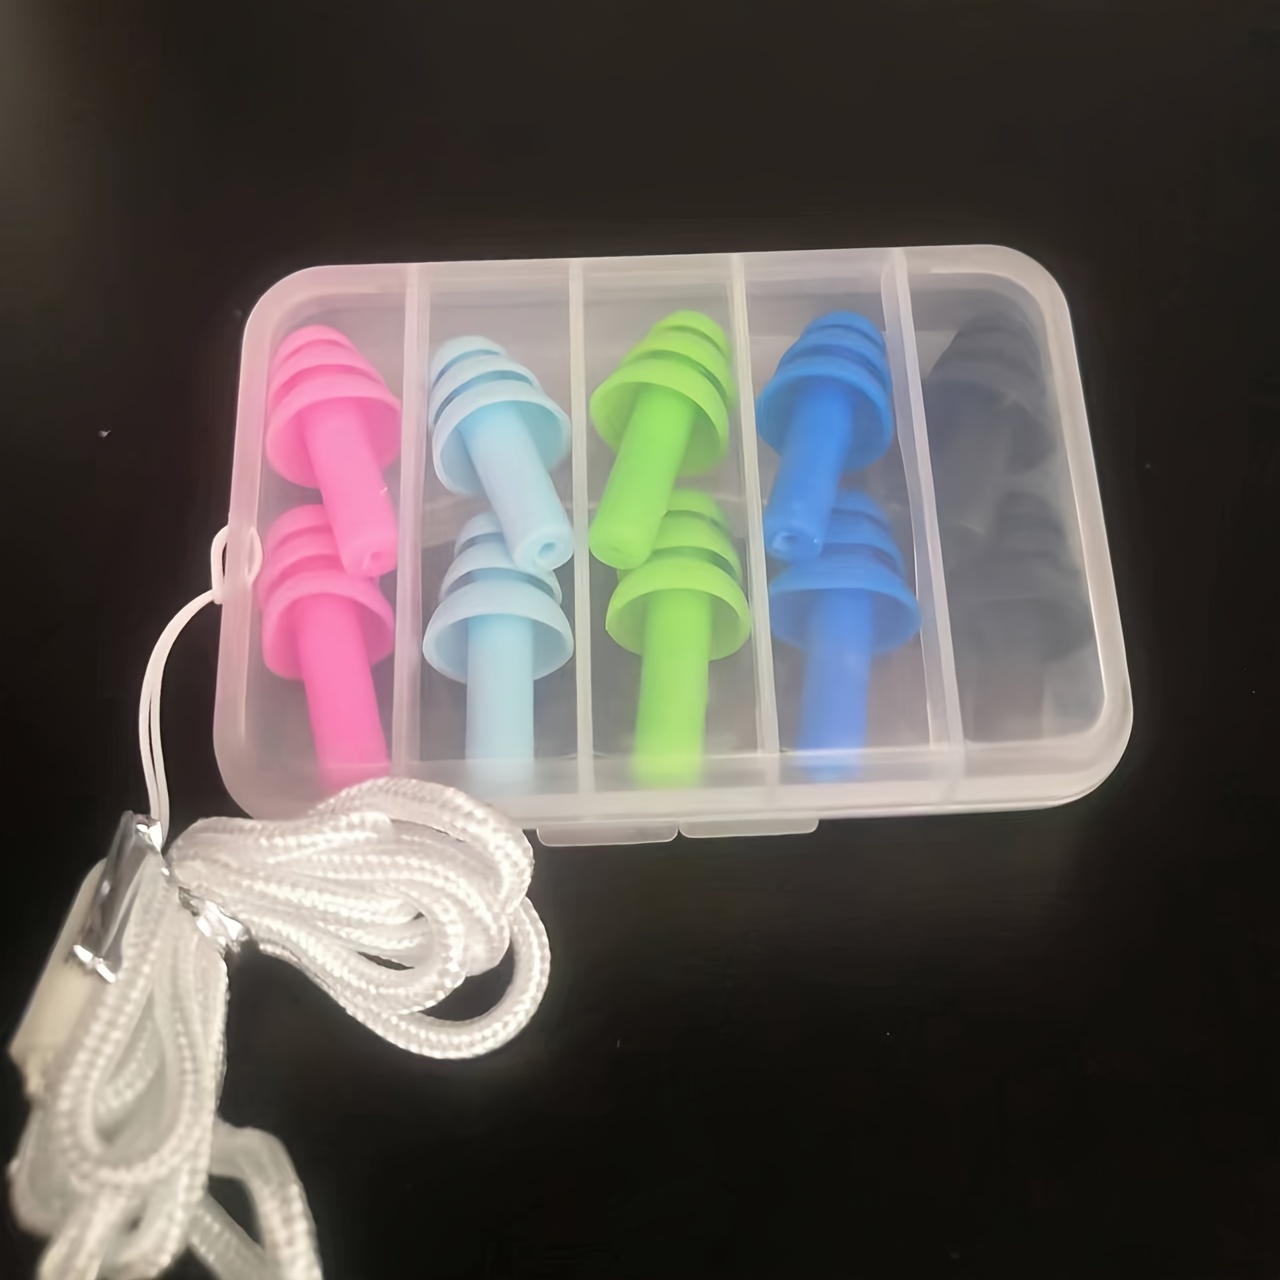 Tapones de silicona reutilizables para los oídos, impermeables